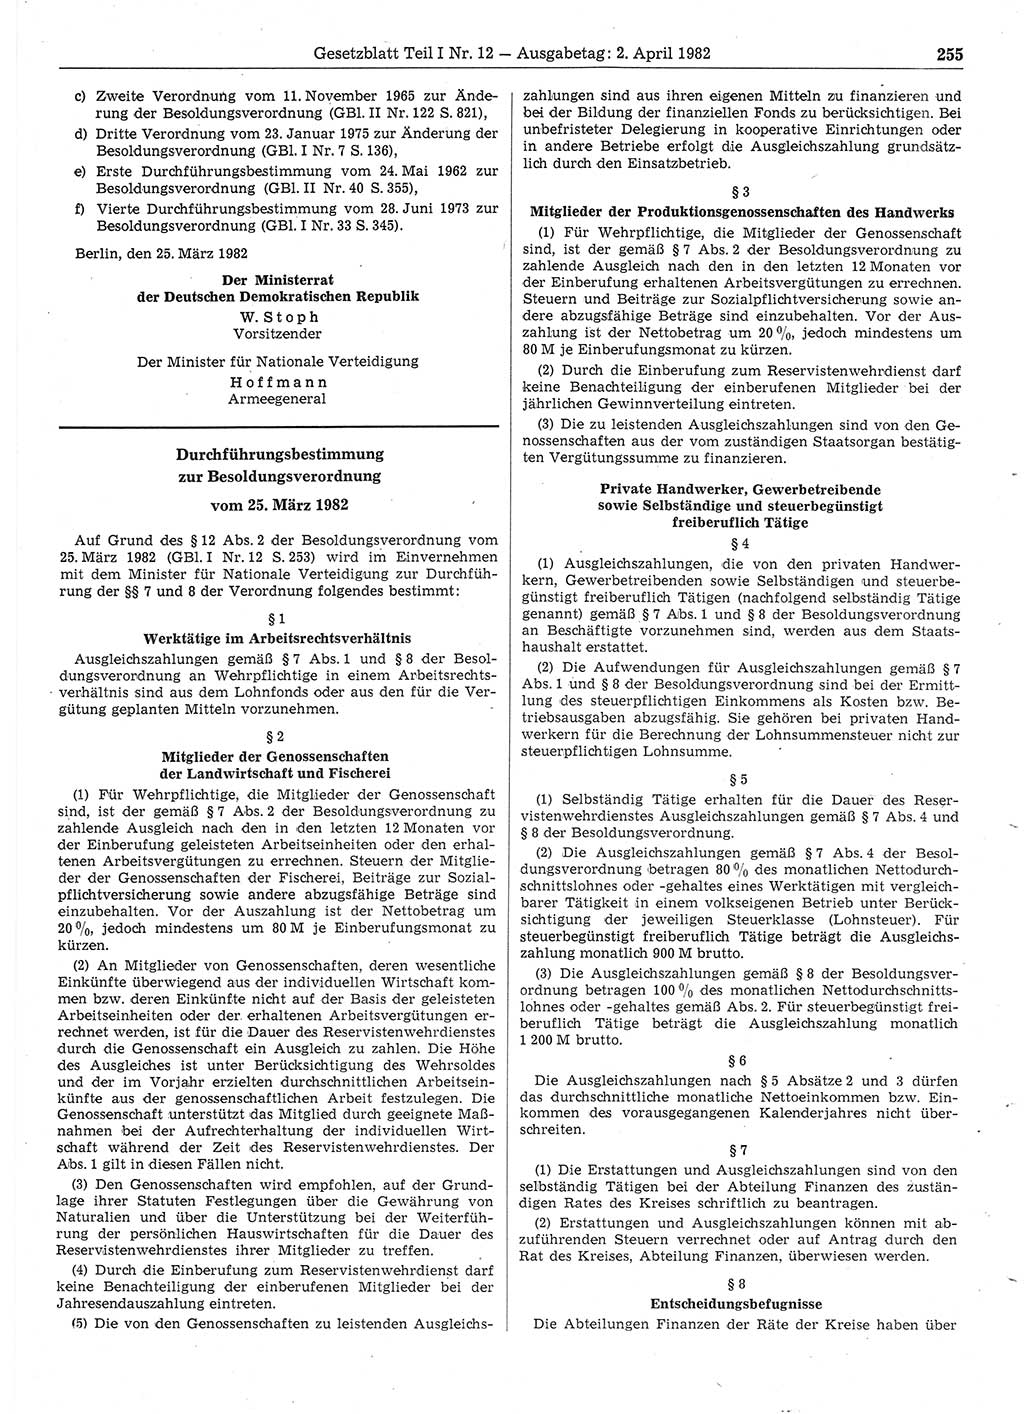 Gesetzblatt (GBl.) der Deutschen Demokratischen Republik (DDR) Teil Ⅰ 1982, Seite 255 (GBl. DDR Ⅰ 1982, S. 255)